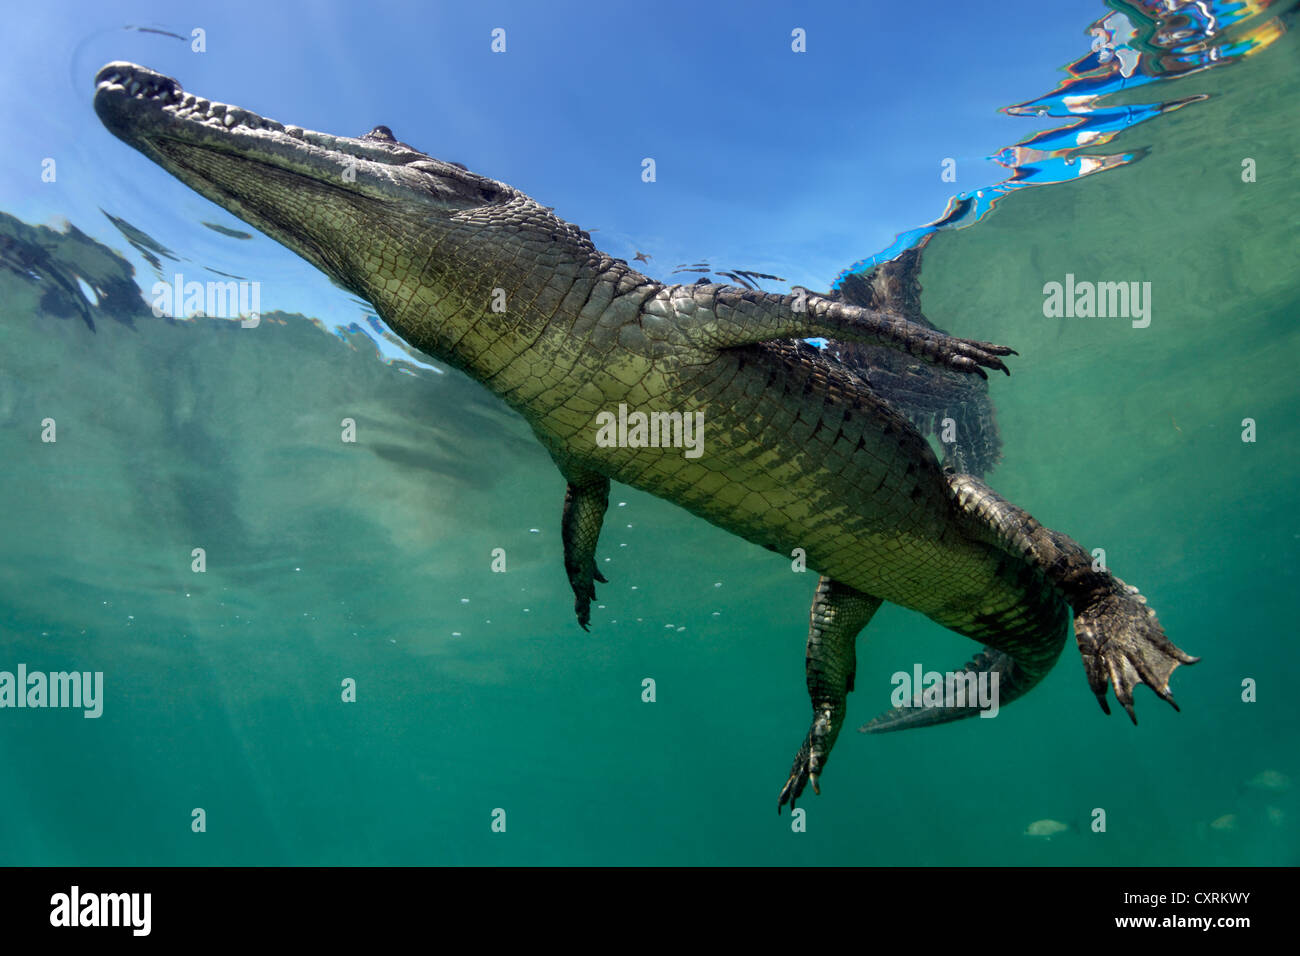 Coccodrillo di acqua salata o di estuario o coccodrillo Indo-pacifico Crocodile (Crocodylus porosus), subacquea, nuotano vicino alla superficie Foto Stock